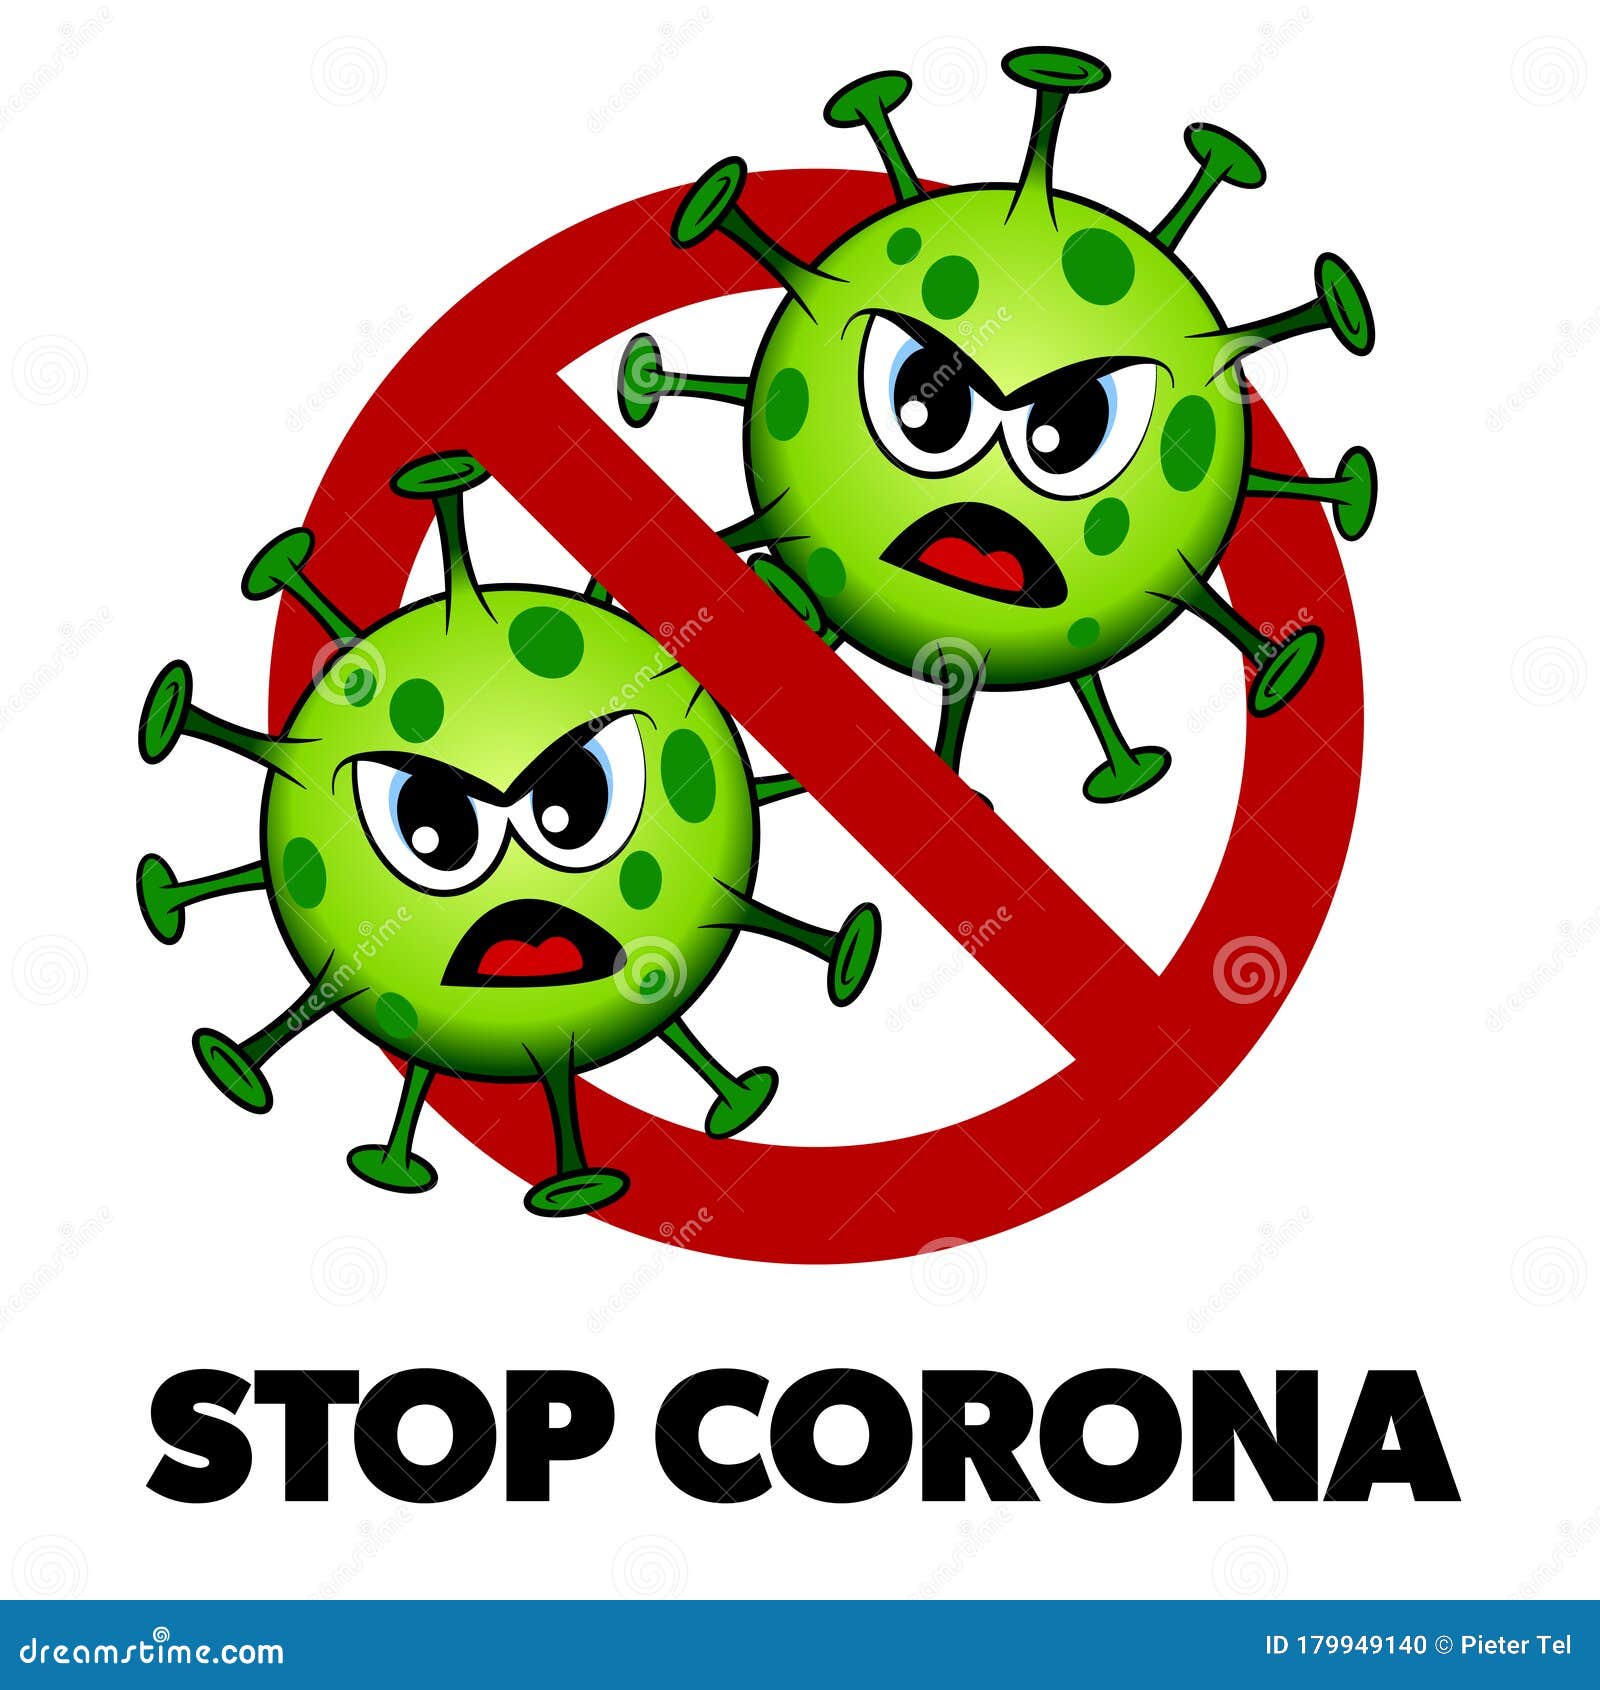 stop corona cartoon style sign, angry covid-19